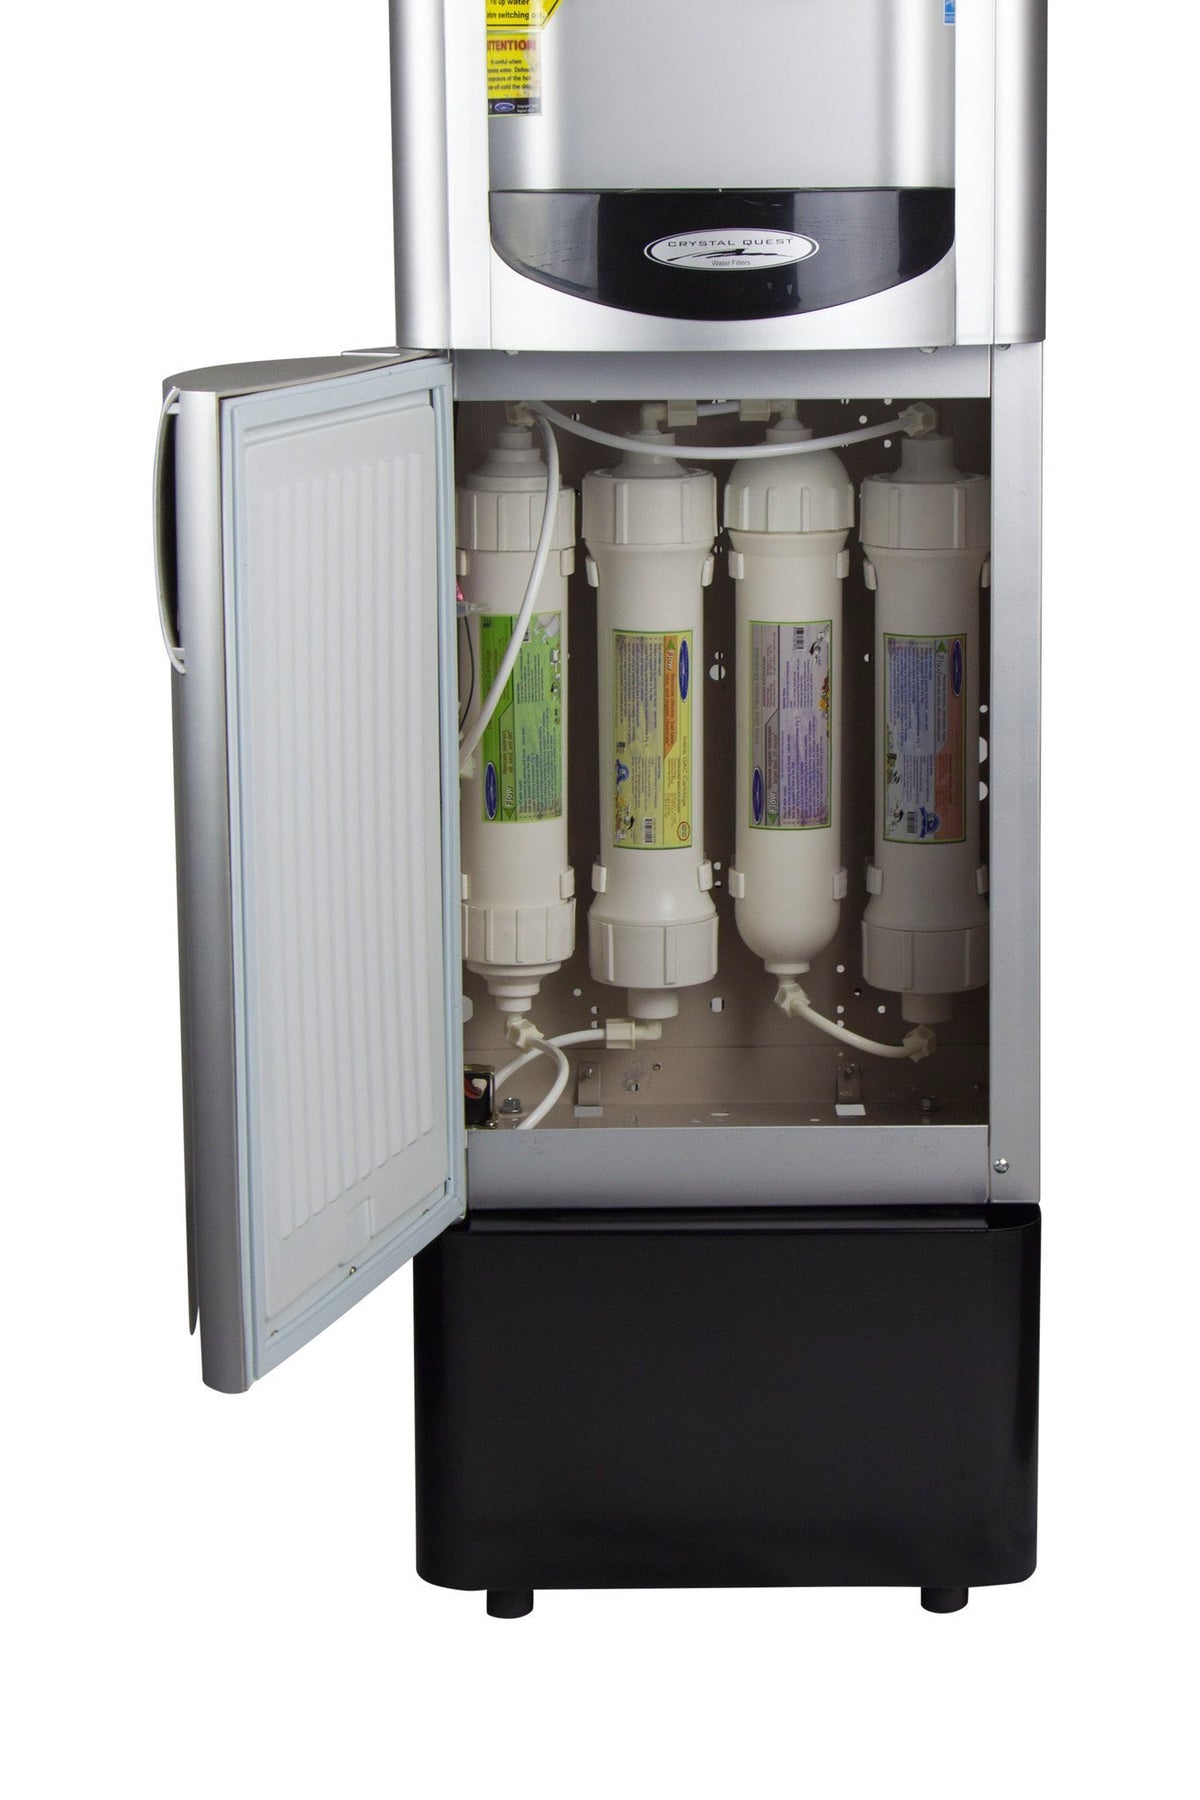 SHARP Ultrafiltration Bottleless Water Cooler - Bottleless Water Coolers - Crystal Quest Water Filters